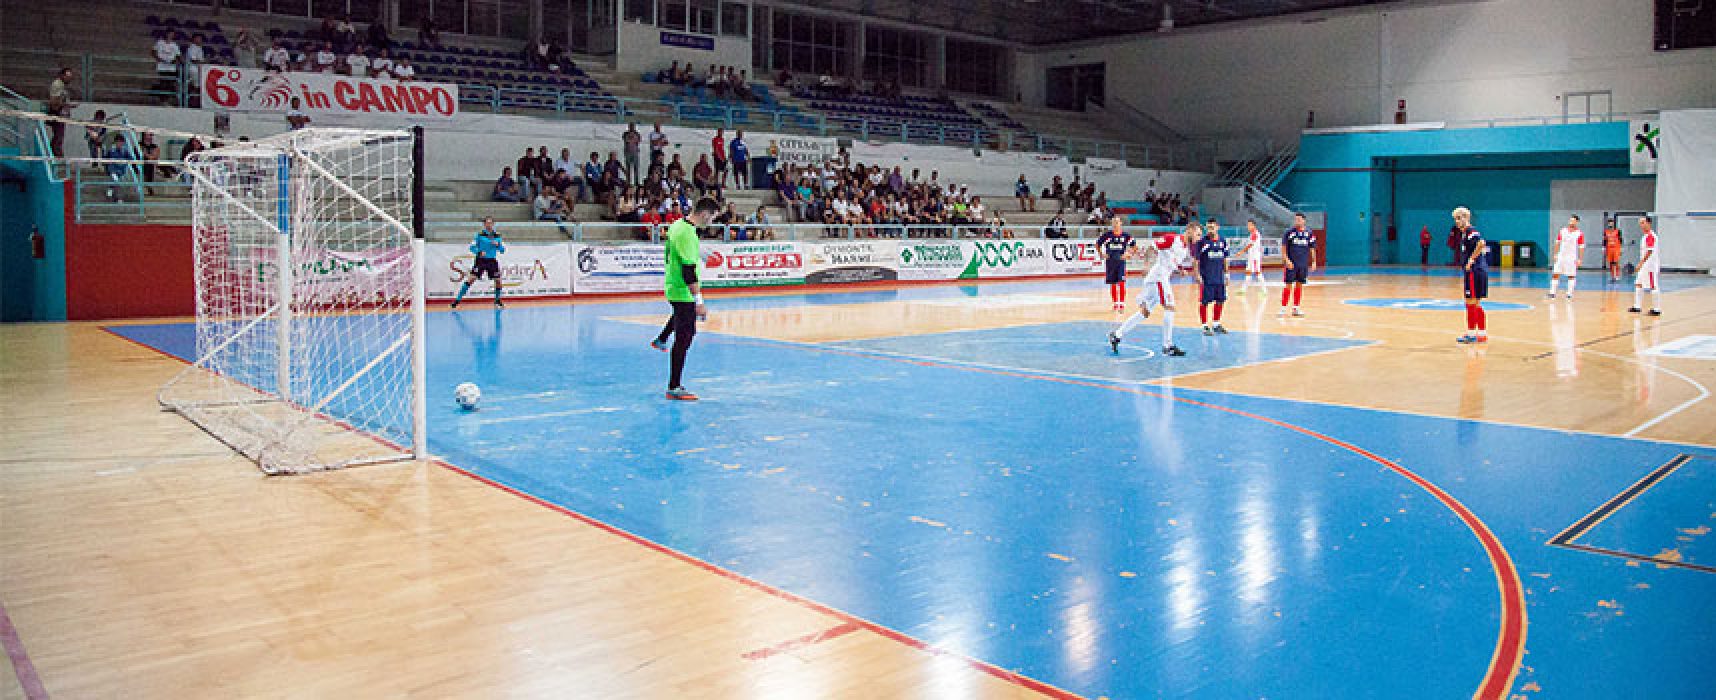 Oggi amichevole Futsal Bisceglie-Diaz, obiettivo mantenere la giusta condizione